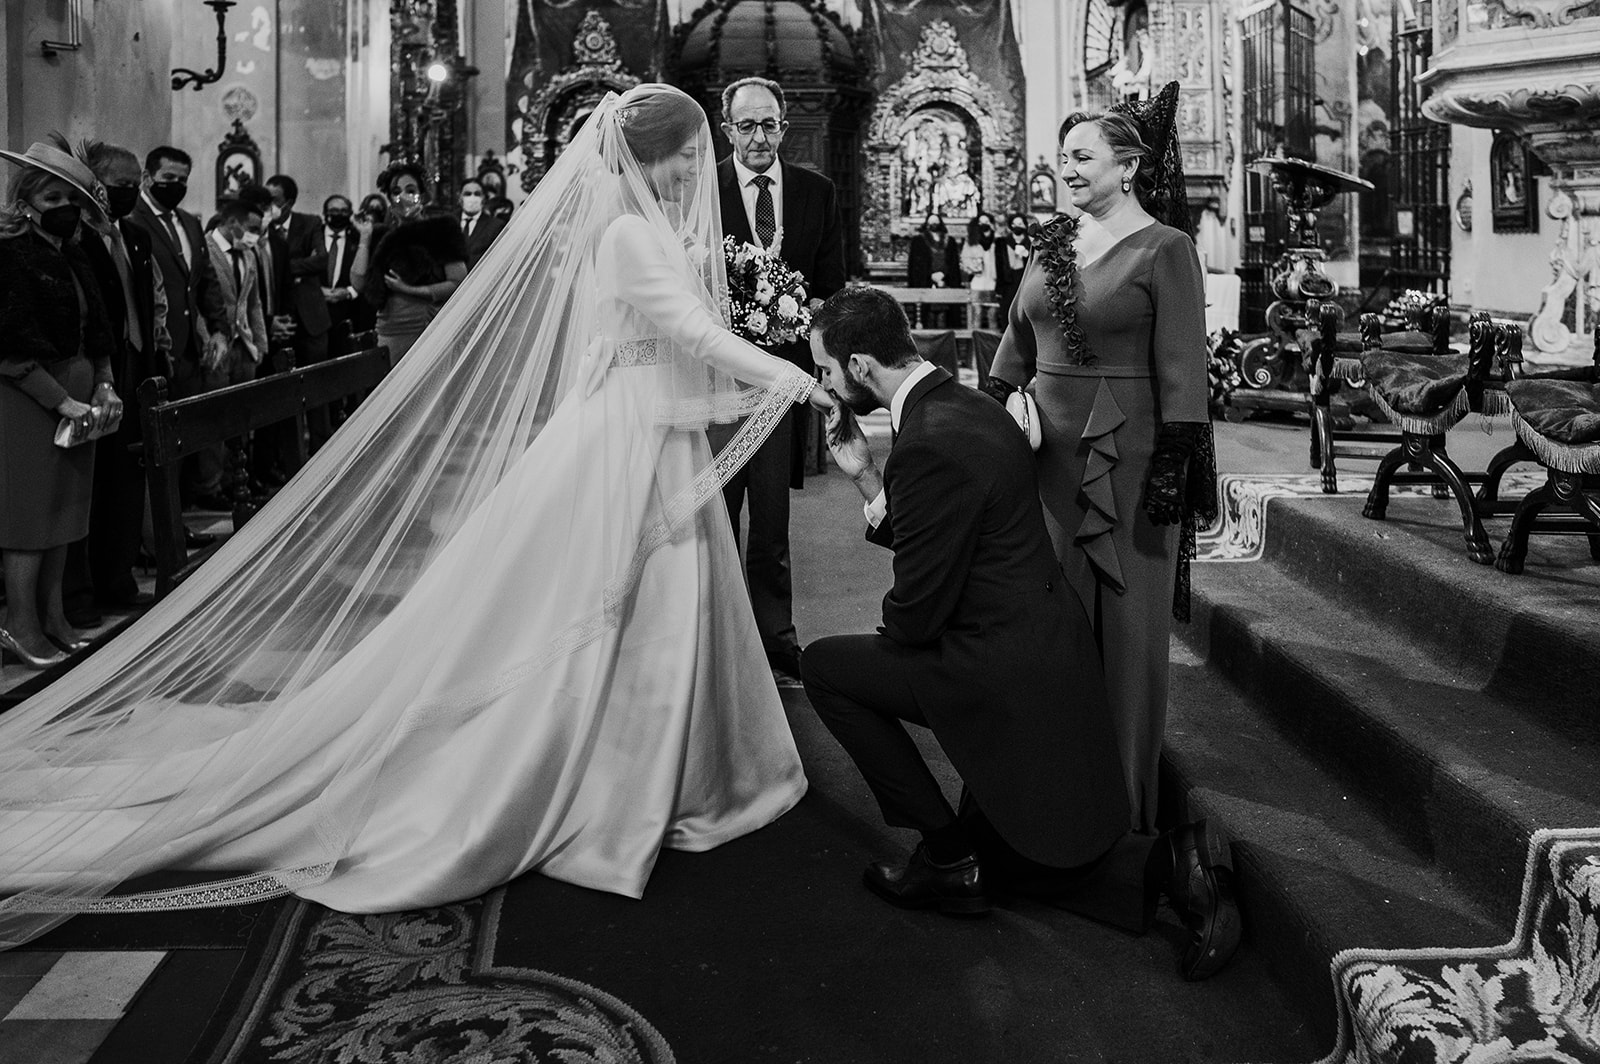 Pablo arrodillado besándo la mano a María a los pies del altar de la Parroquia de la Magdalena de Sevilla, justo antes de casarse.